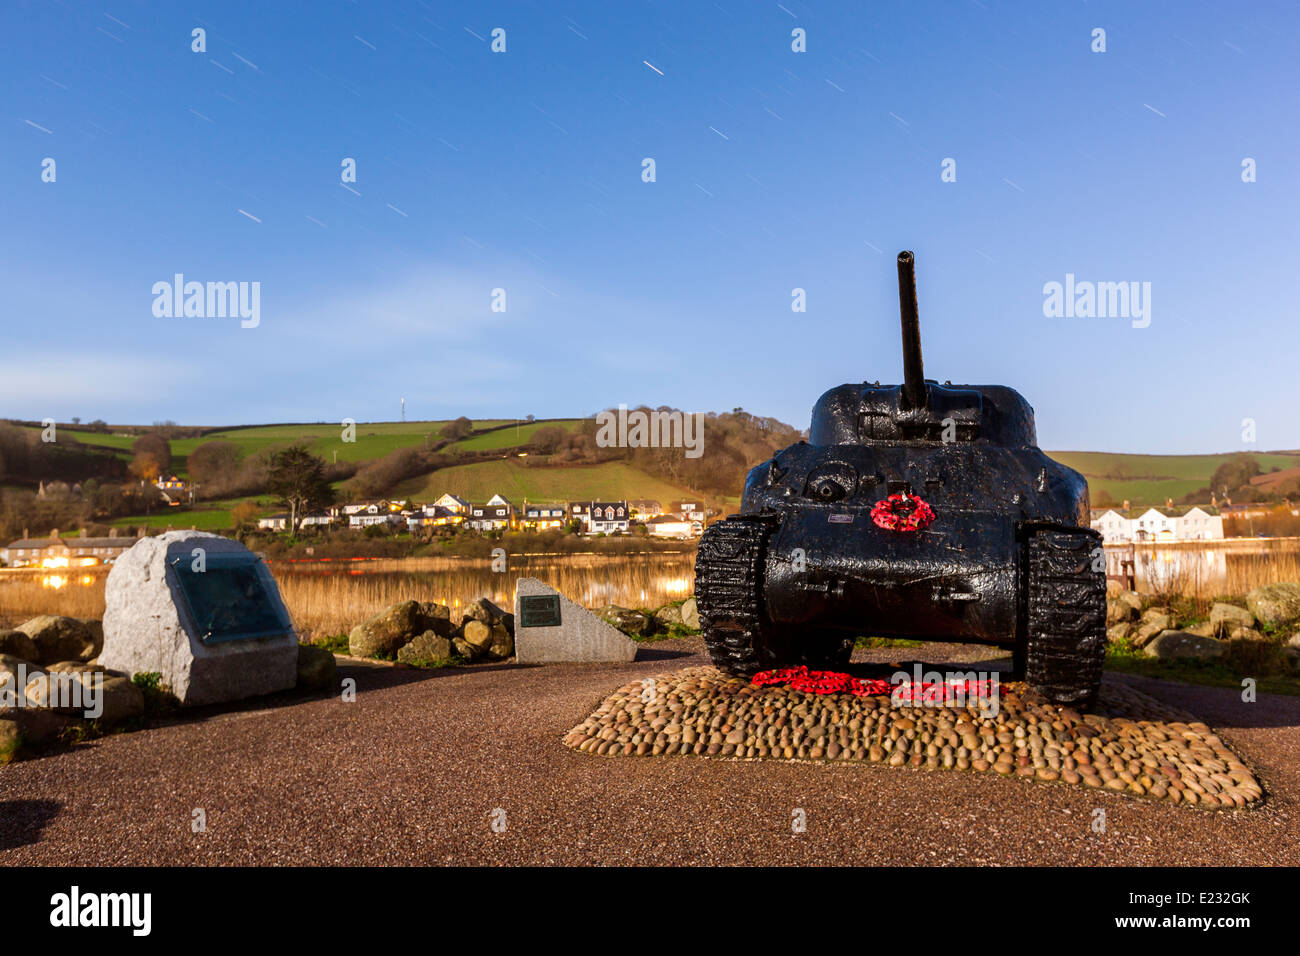 Sherman-Panzer von Anfang Bucht abgerufen und als ein Kriegsdenkmal in Torcross, Devon, England, Vereinigtes Königreich eingerichtet. Stockfoto